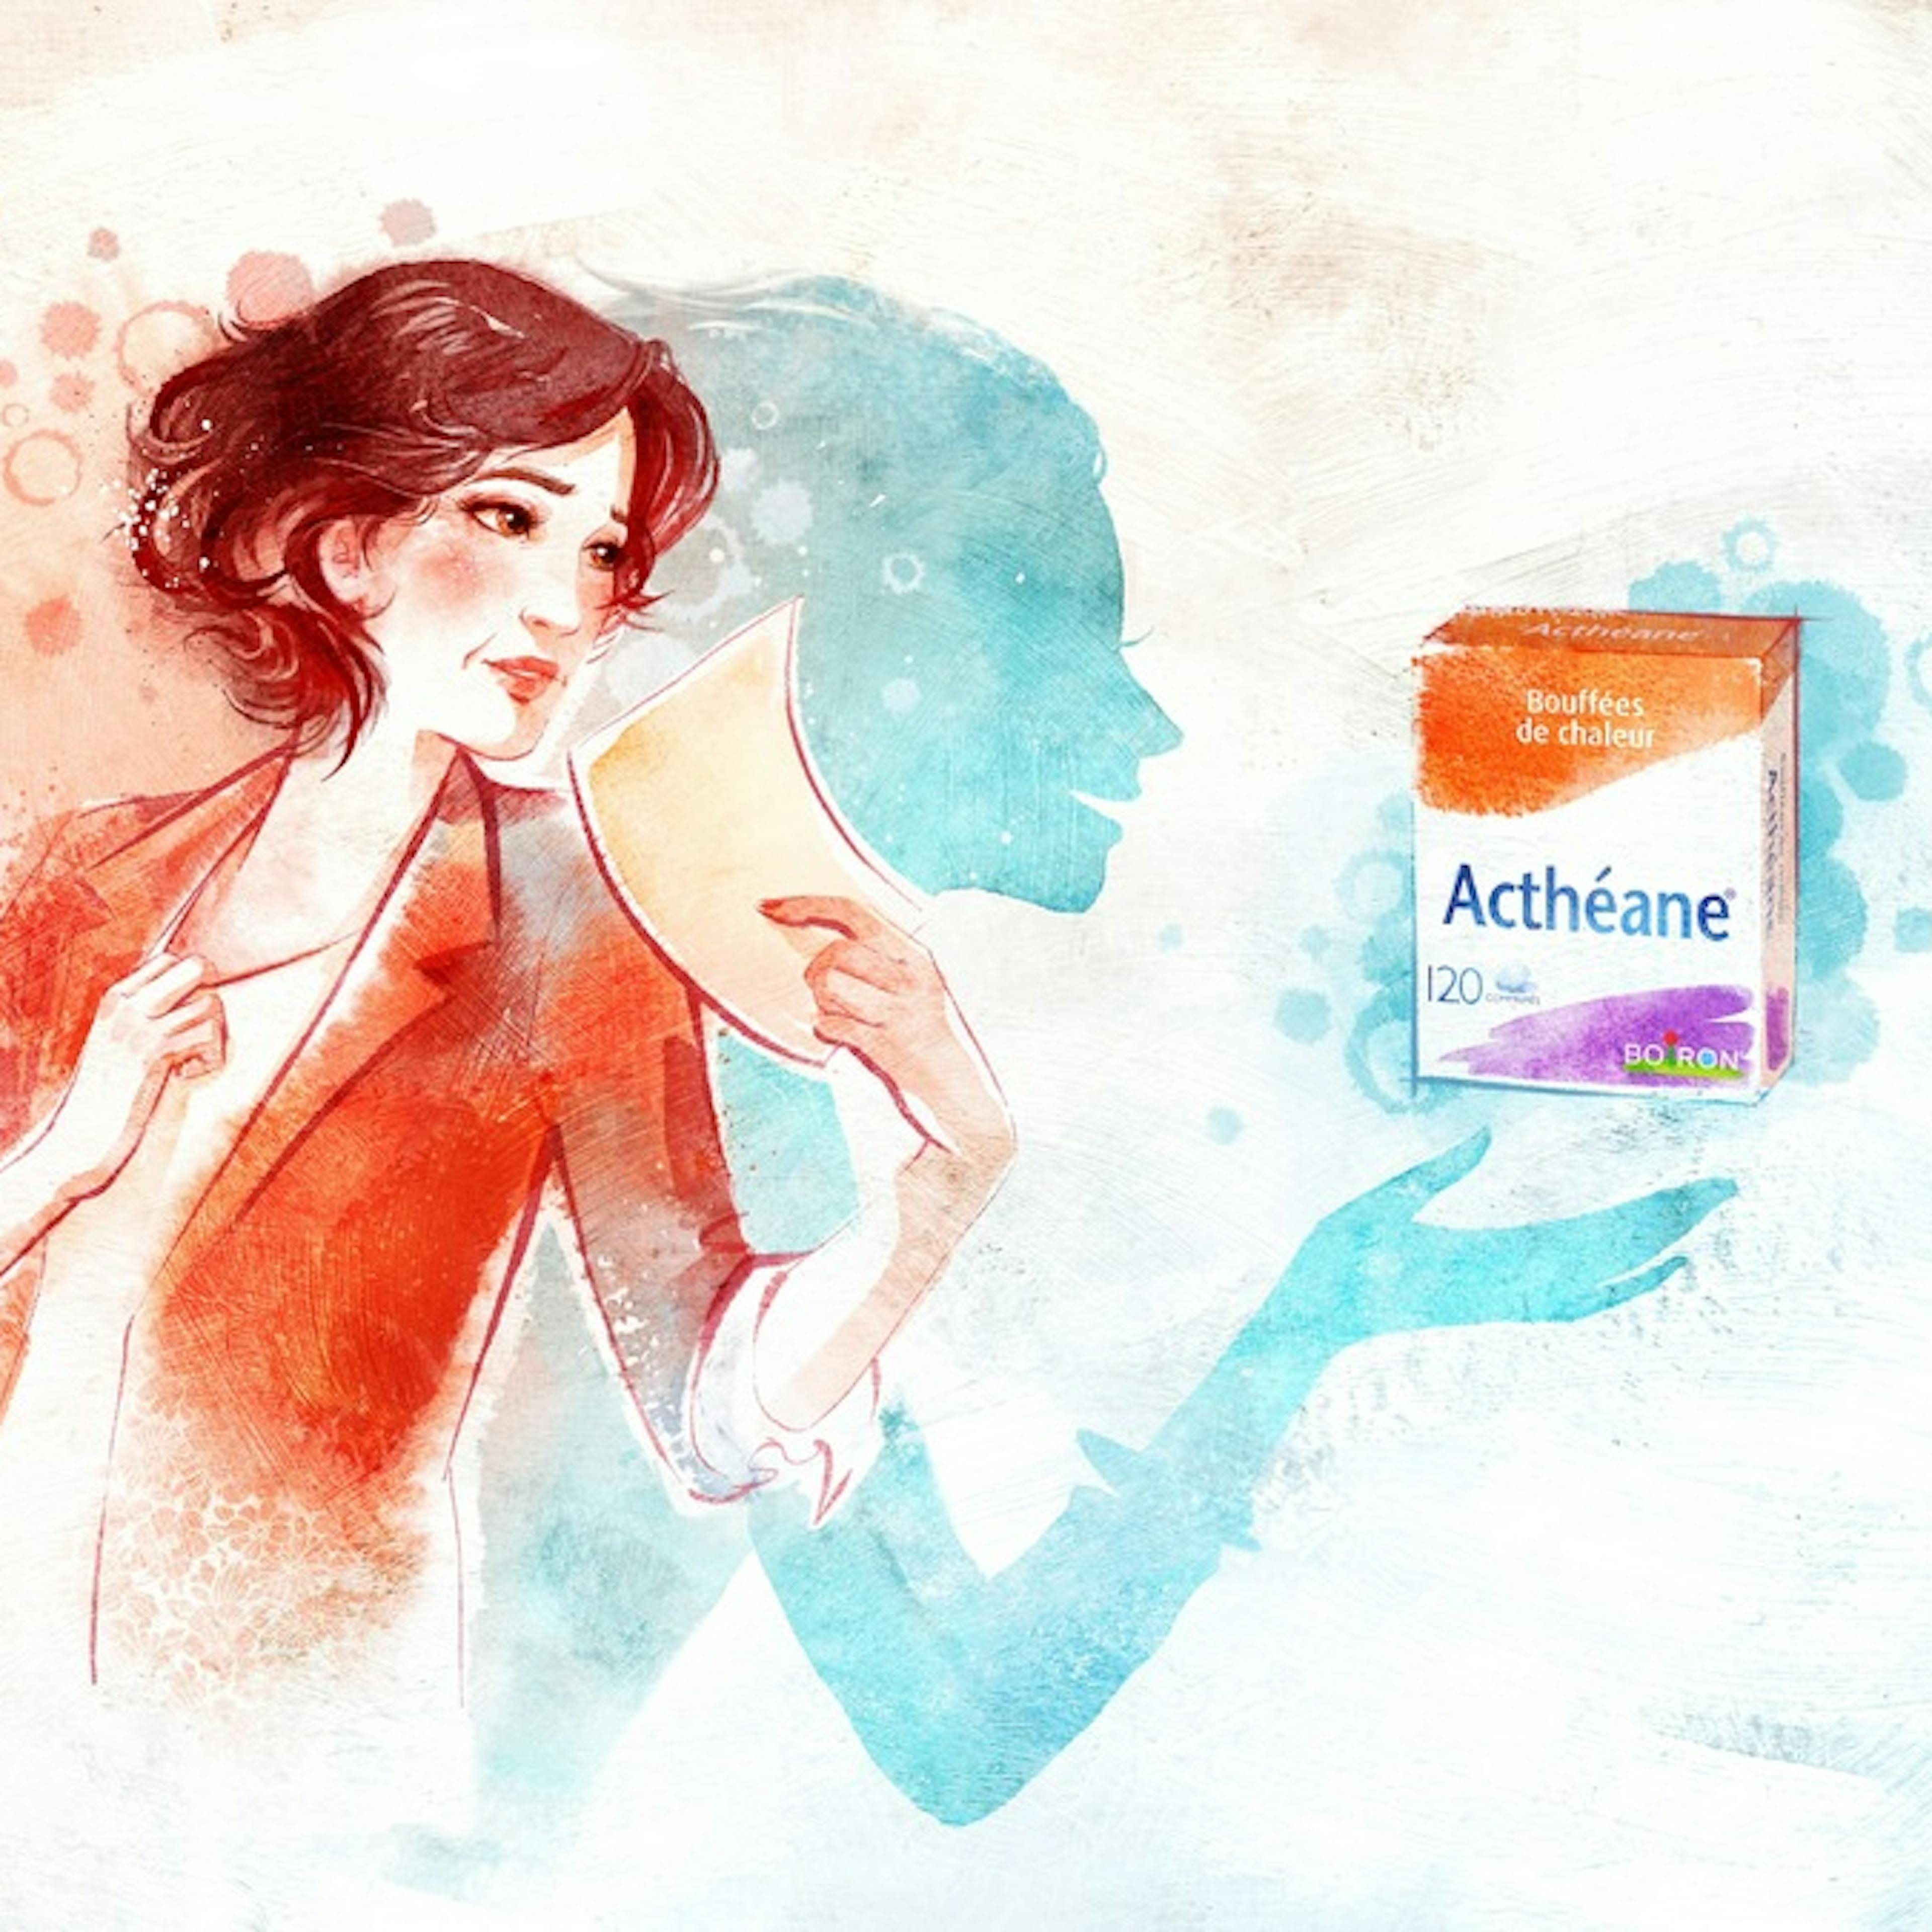 Actheane - nos médicaments homéopathiques spécialités - Bouffées de chaleur - Perturbation du cycle menstruel - Muqueuses sèches